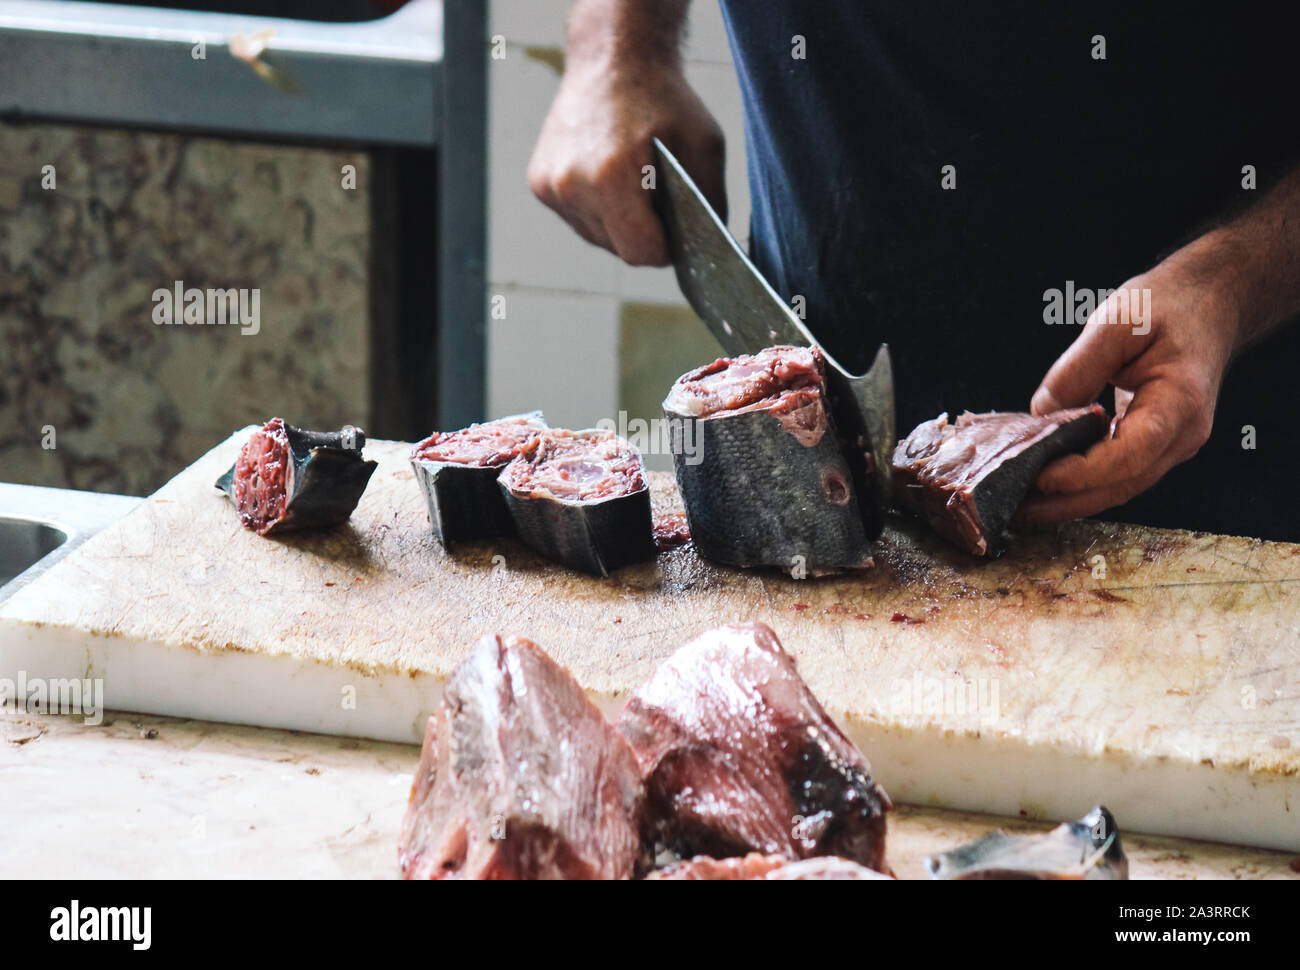 Schließen Sie die Hände der Fischer schneidet Thunfisch mit einem riesigen Cleaver auf einem Holzbrett. Verschwommen Thunfisch, Fleisch in den Vordergrund. Fisch Markt in Funchal, Madeira, Portugal. Die Rechte der Tiere, Missbrauch und Grausamkeit. Stockfoto